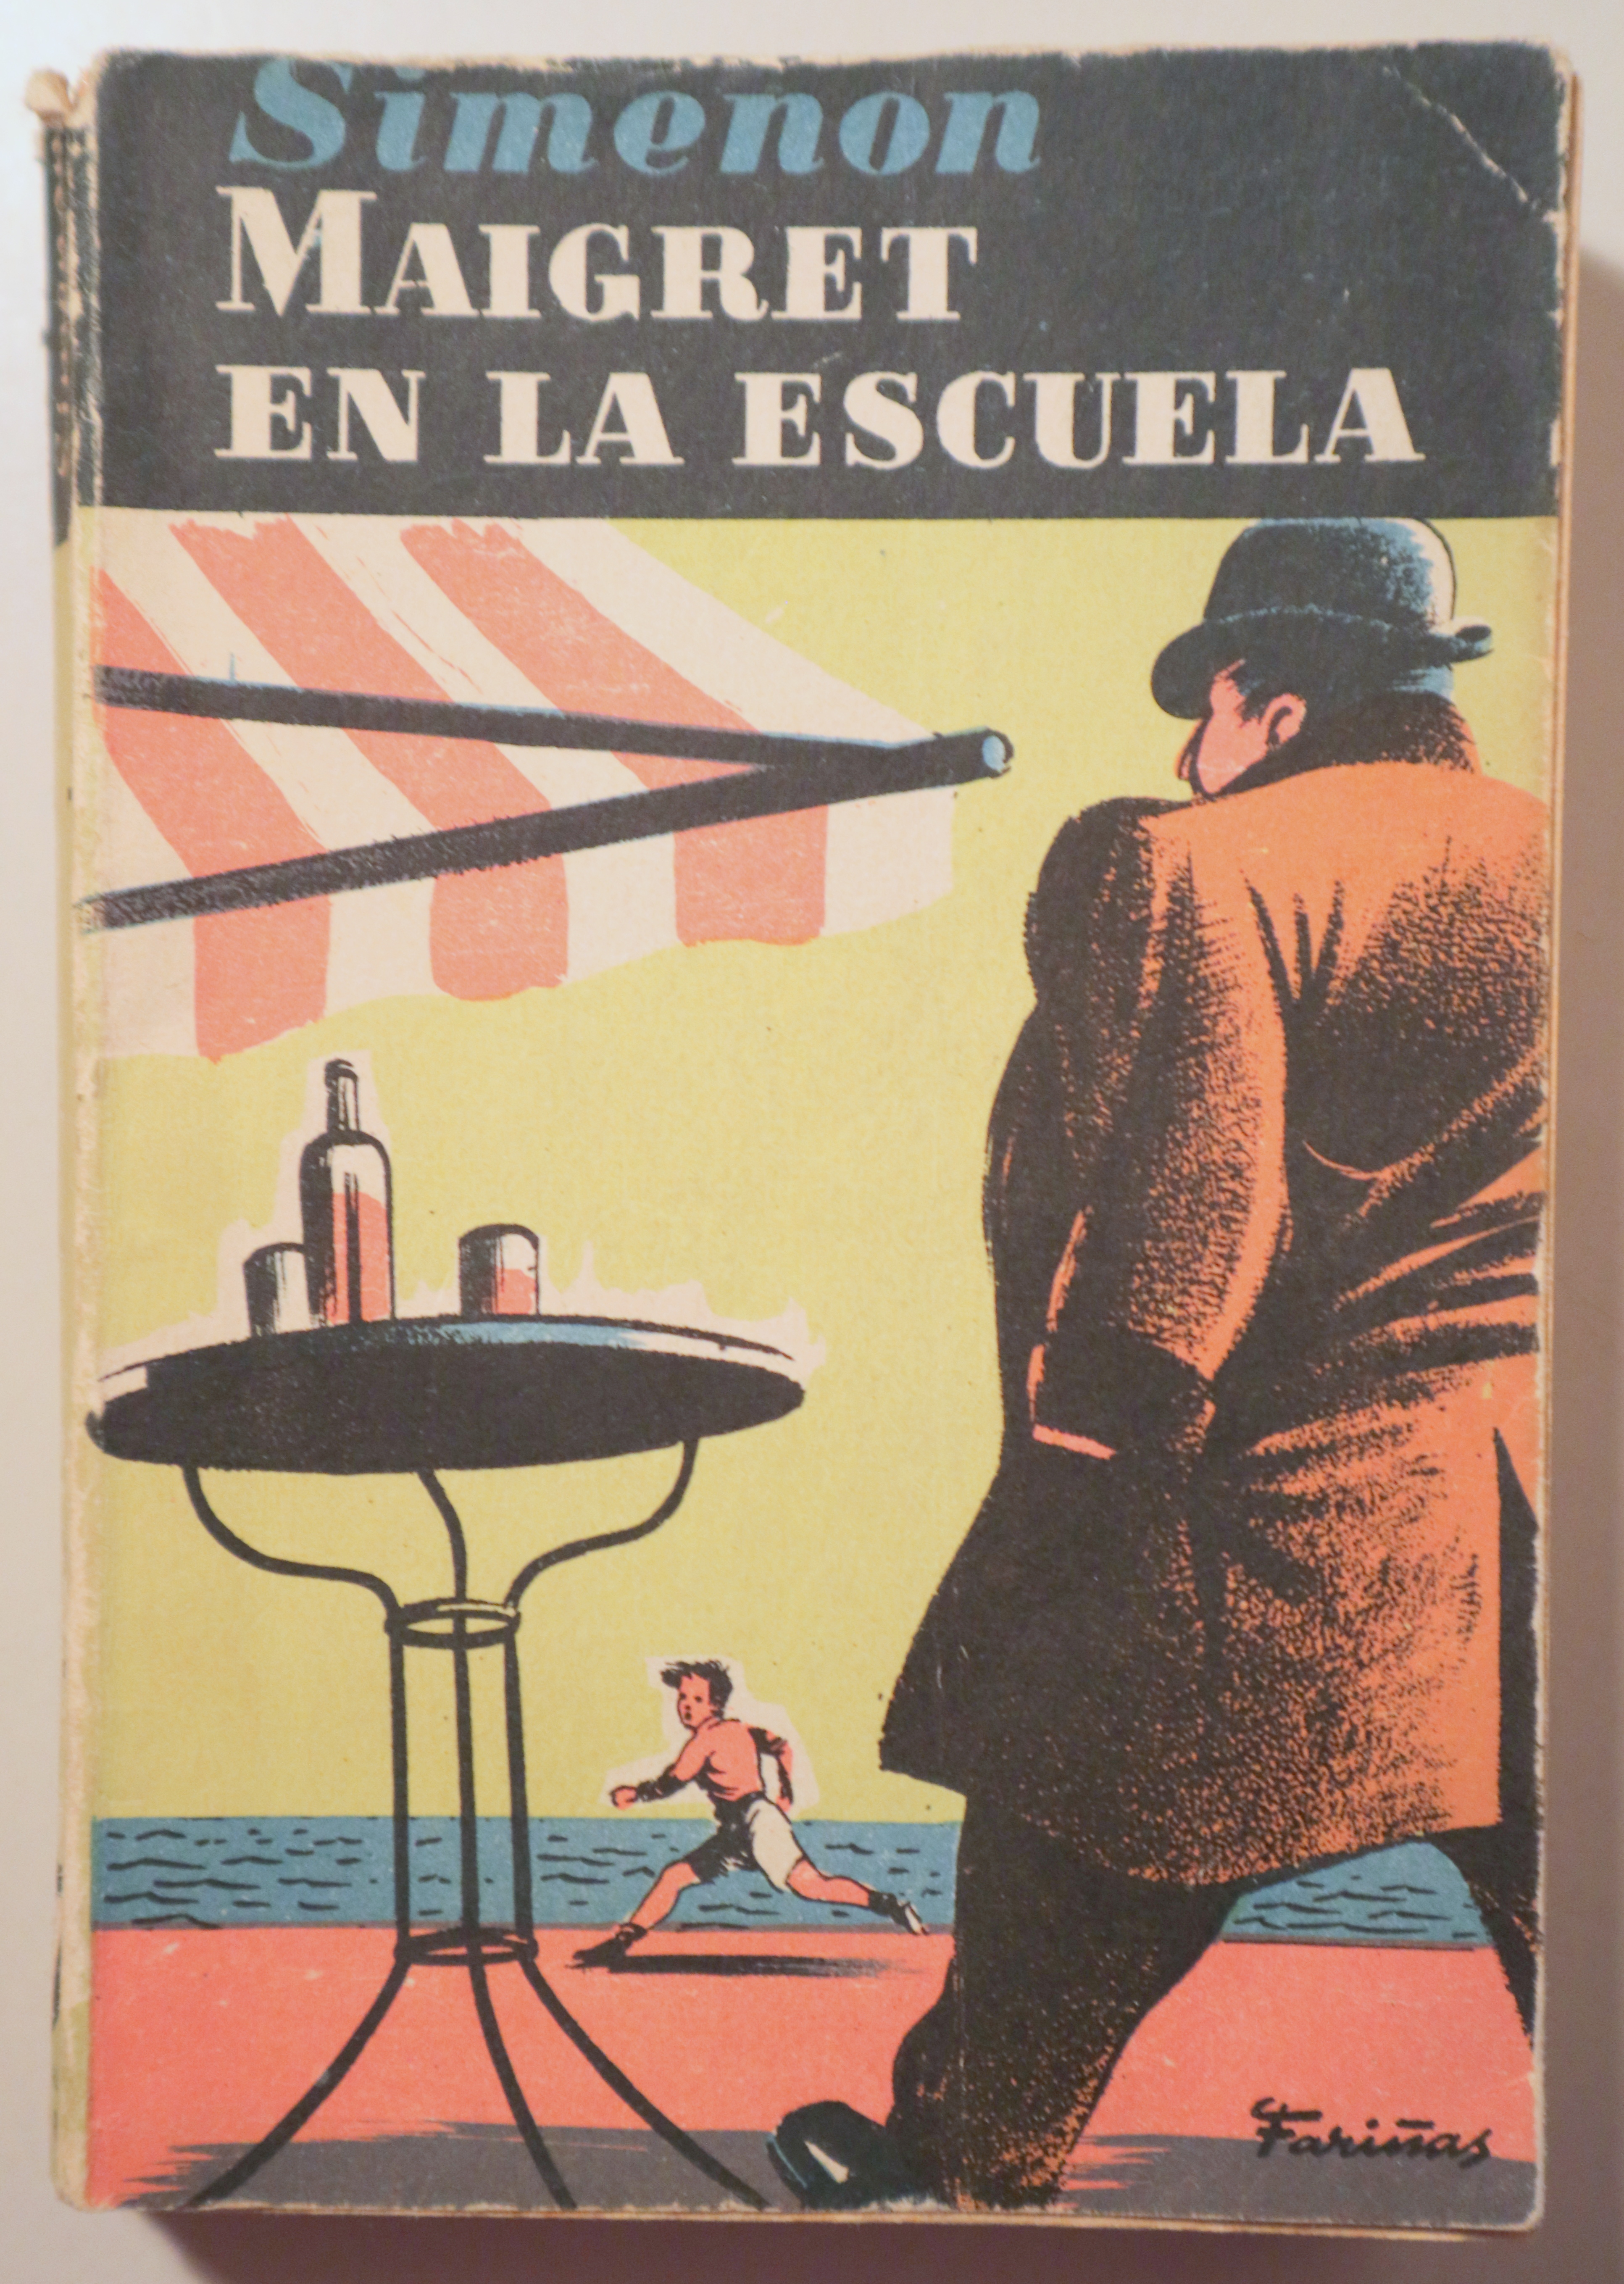 MAIGRET EN LA ESCUELA - Barcelona 1955 - 1ª edición en español